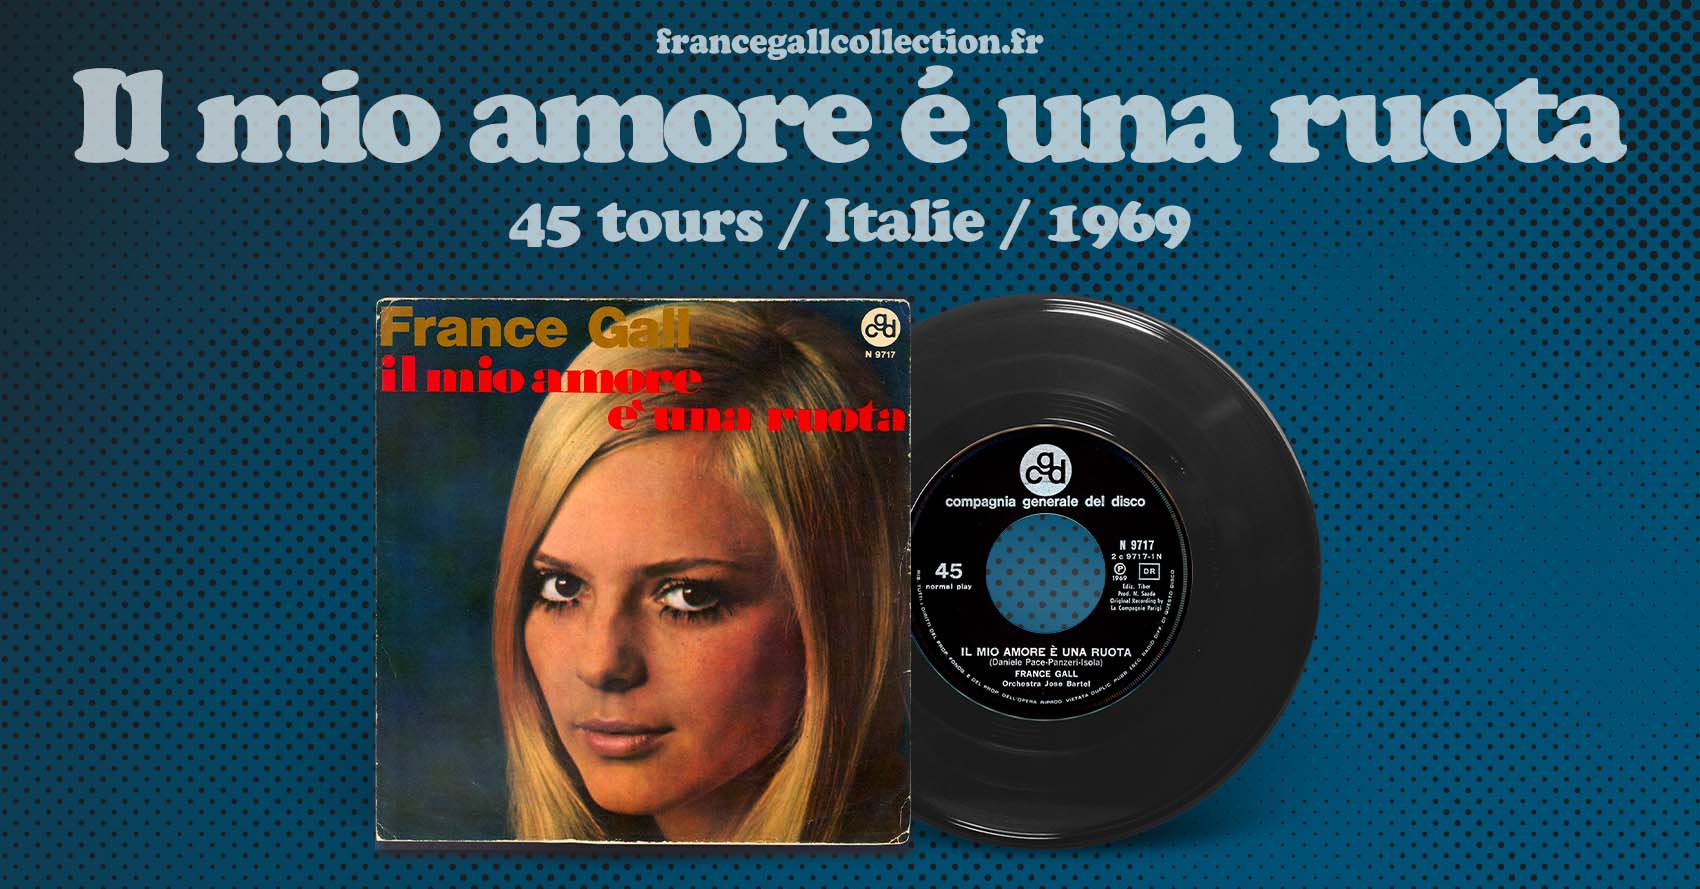 45 tours en provenance d'Italie contenant en face A le titre Il mio amore é una ruota et en face B la chanson Il topolino blu, version Italienne du titre La Torpedo bleue, adaptation française par Robert Gall.